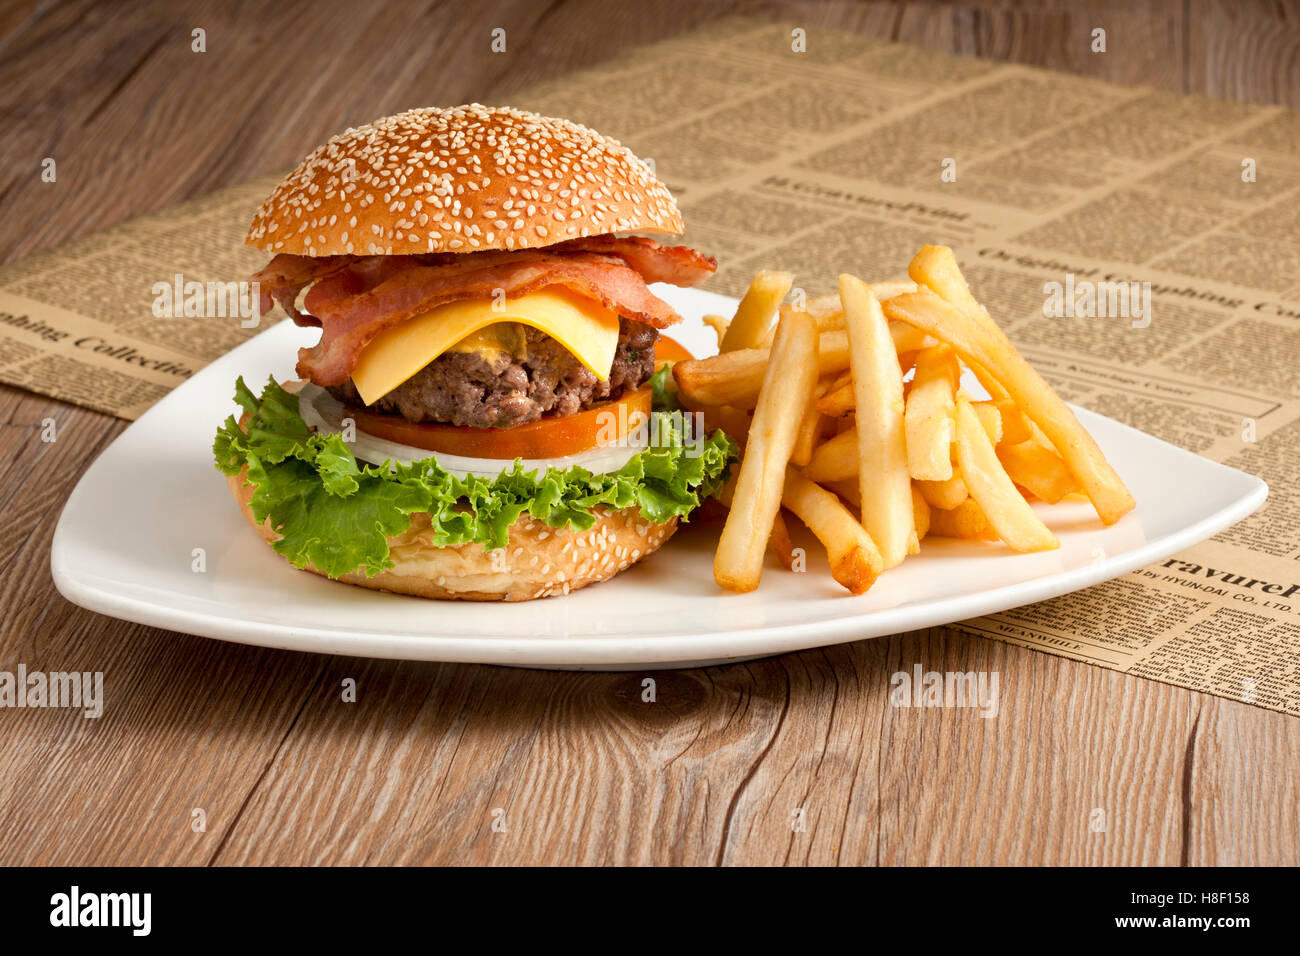 Burger mit Pommes Frites auf weißen Teller Stockfoto